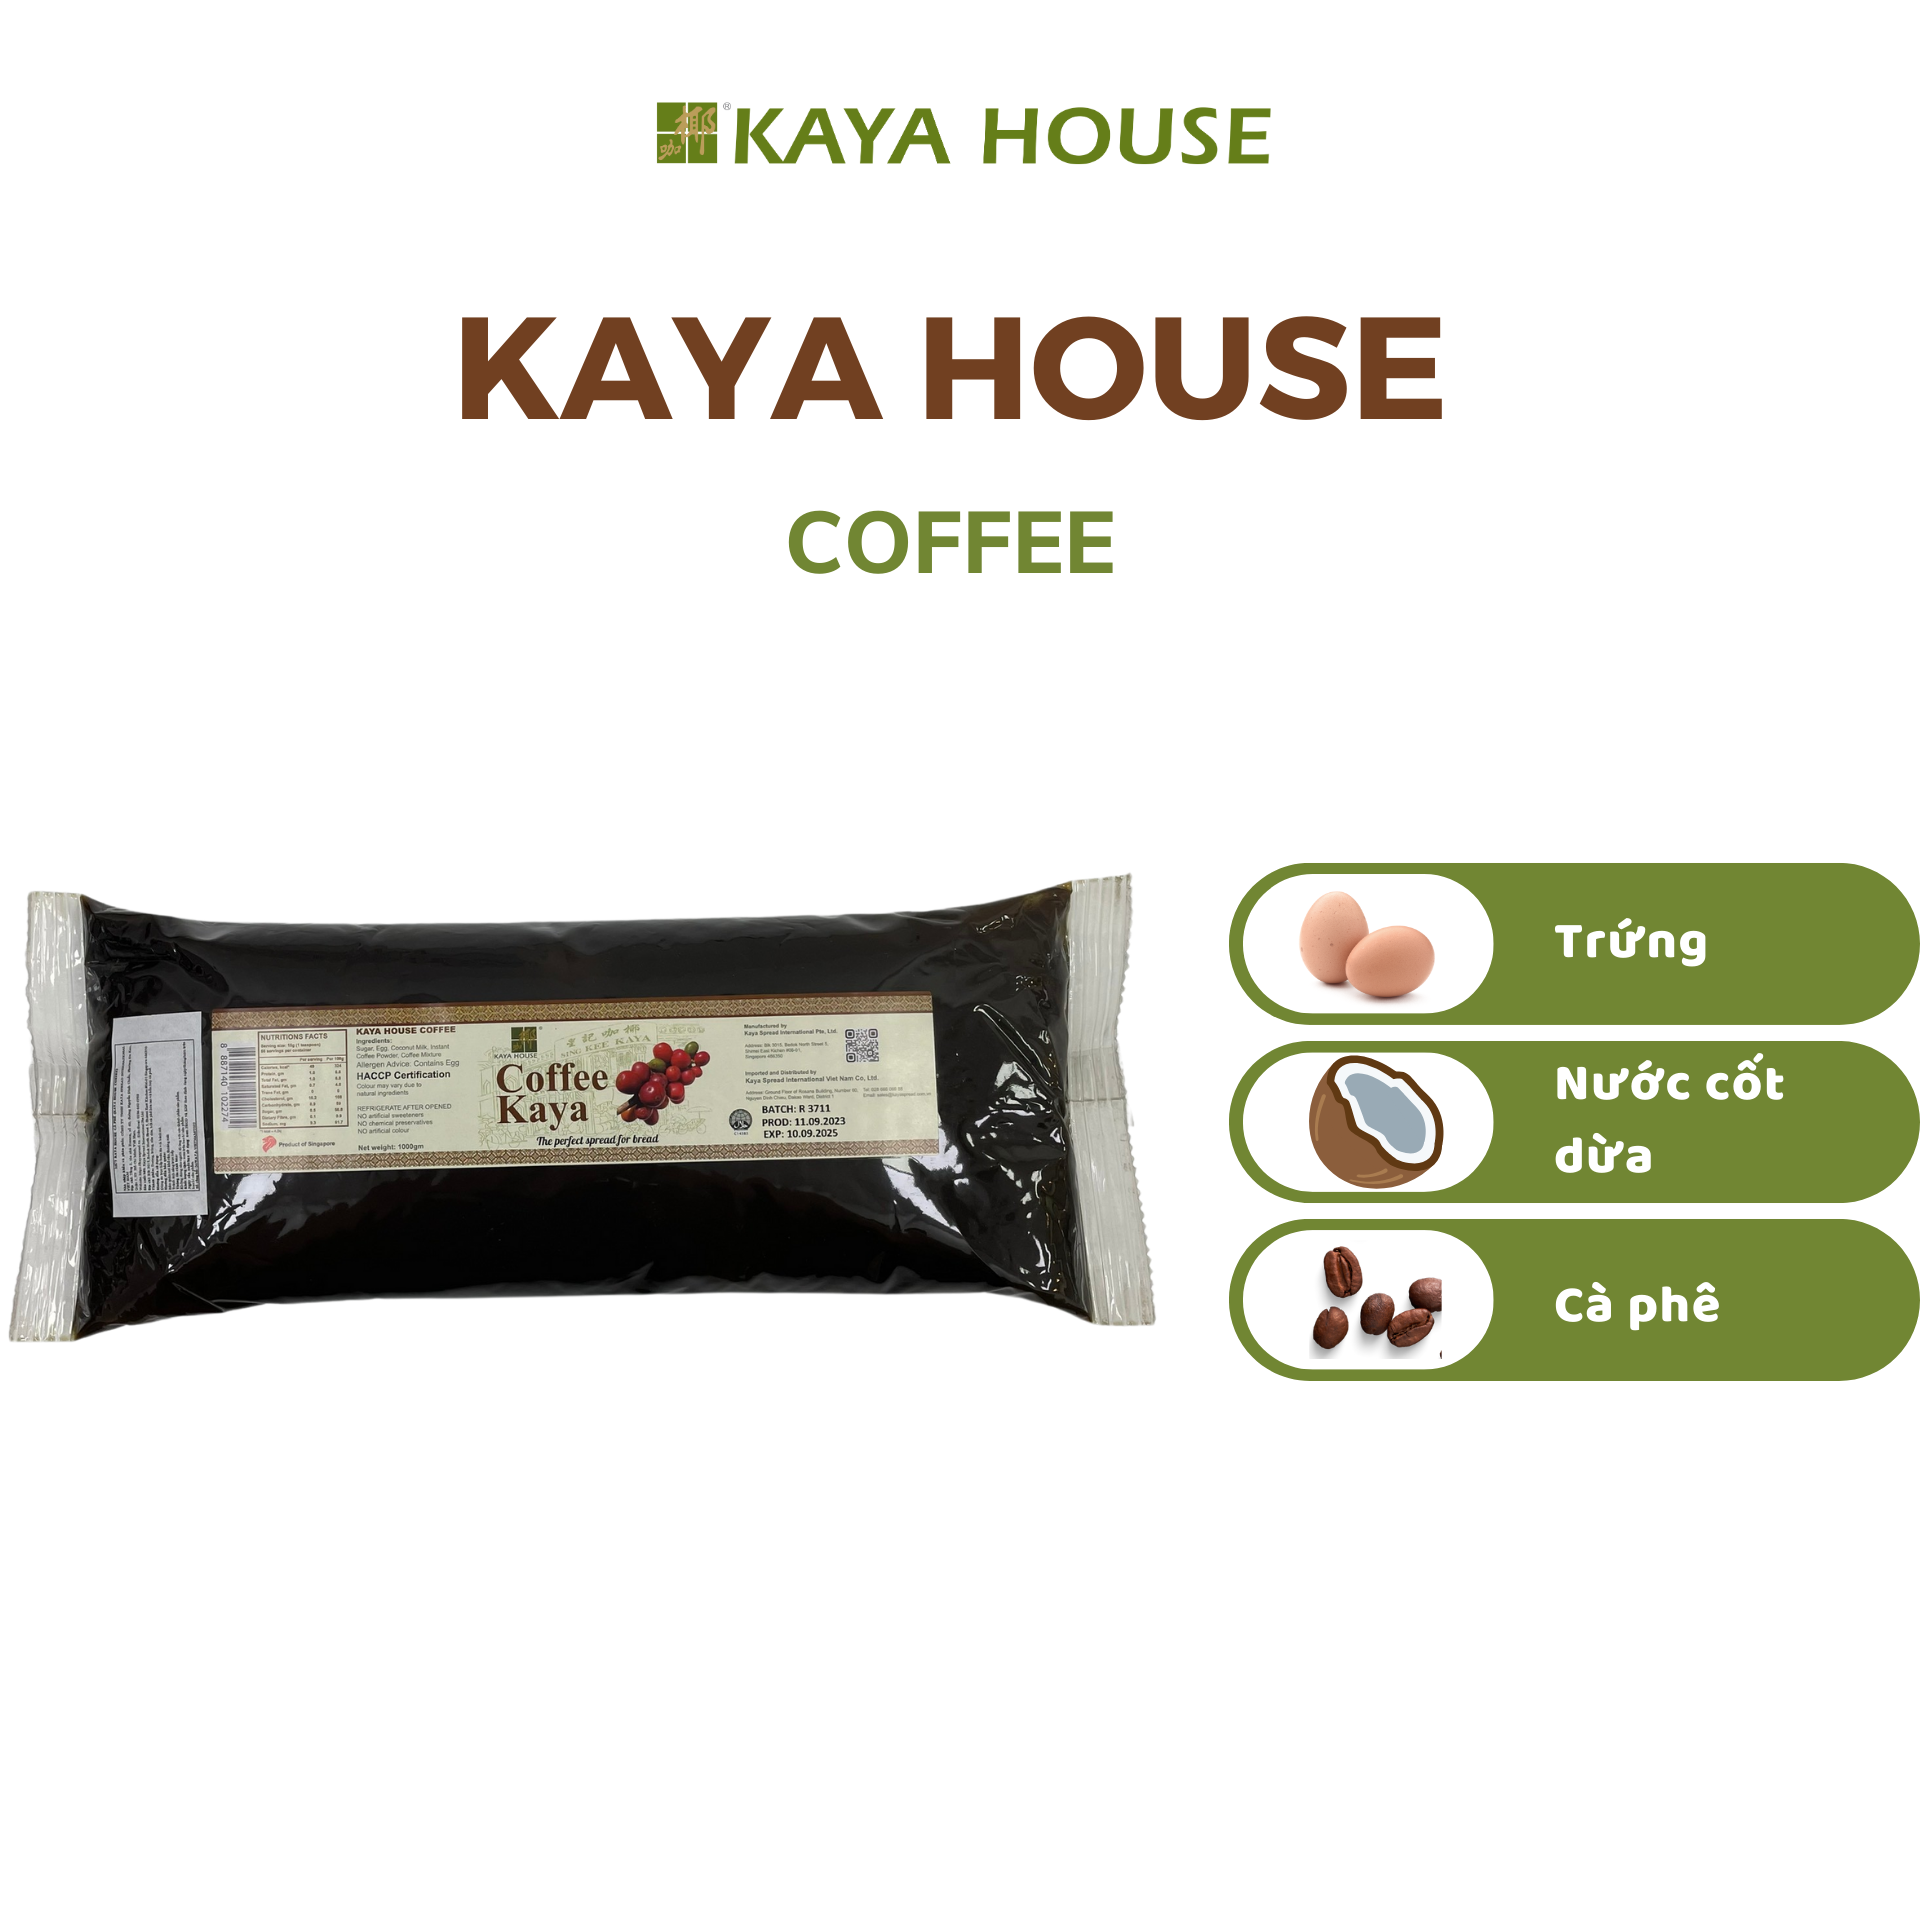 Hình ảnh Mứt Kaya Singapore Coffee túi 1000G - Kaya House - Ăn kèm với Sandwich, làm nguyên liệu nấu ăn